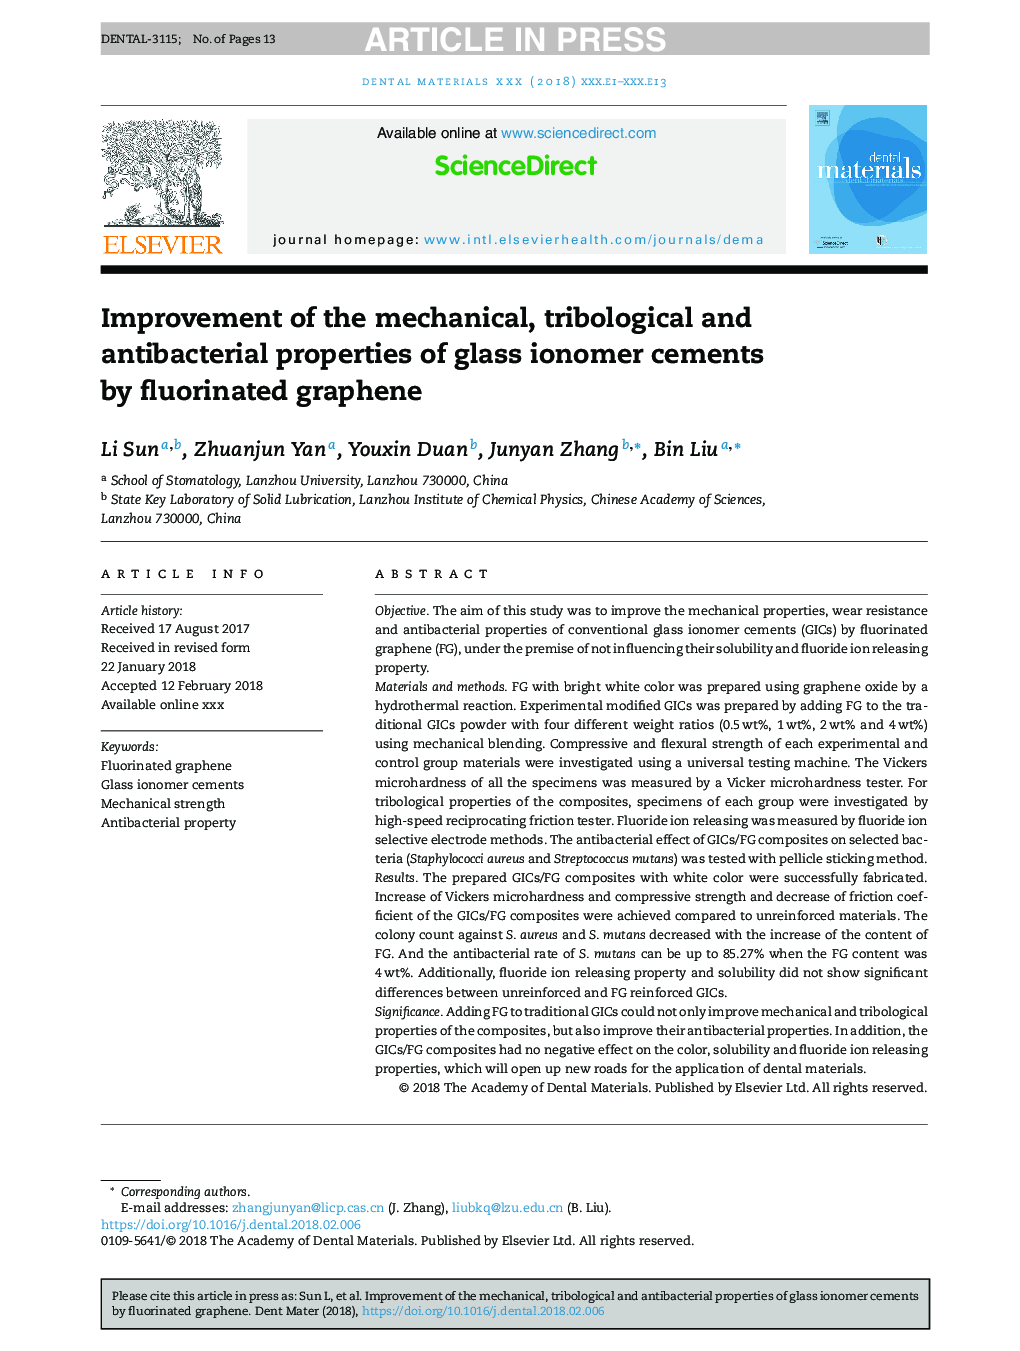 بهبود خواص مکانیکی، تریبولوژیکی و ضد باکتریایی سمان های آینه ای شیشه ای توسط گرافن فلورین 